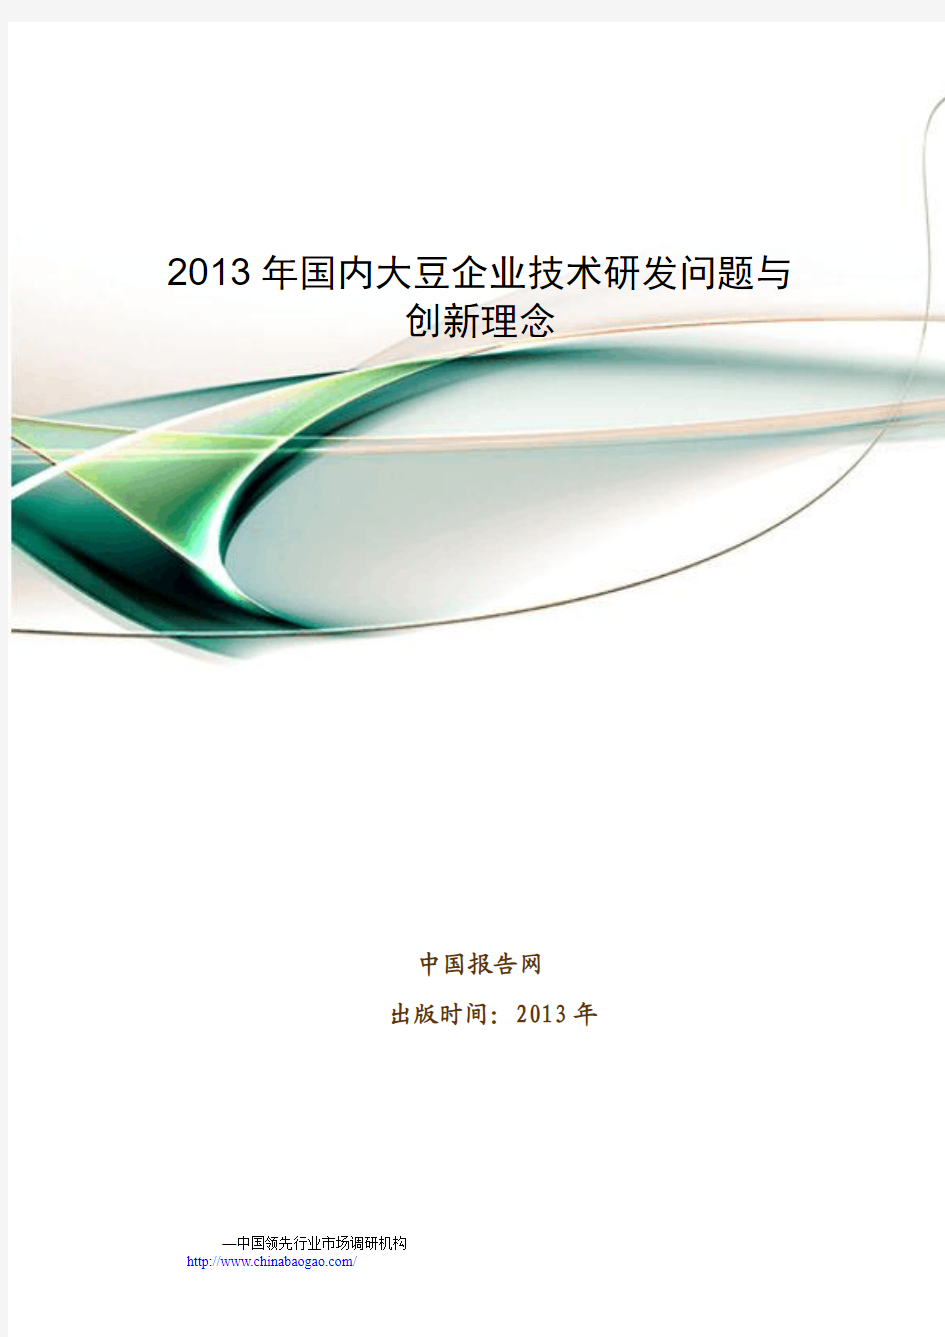 2013-2017年中国大豆企业市场发展前景调研报告